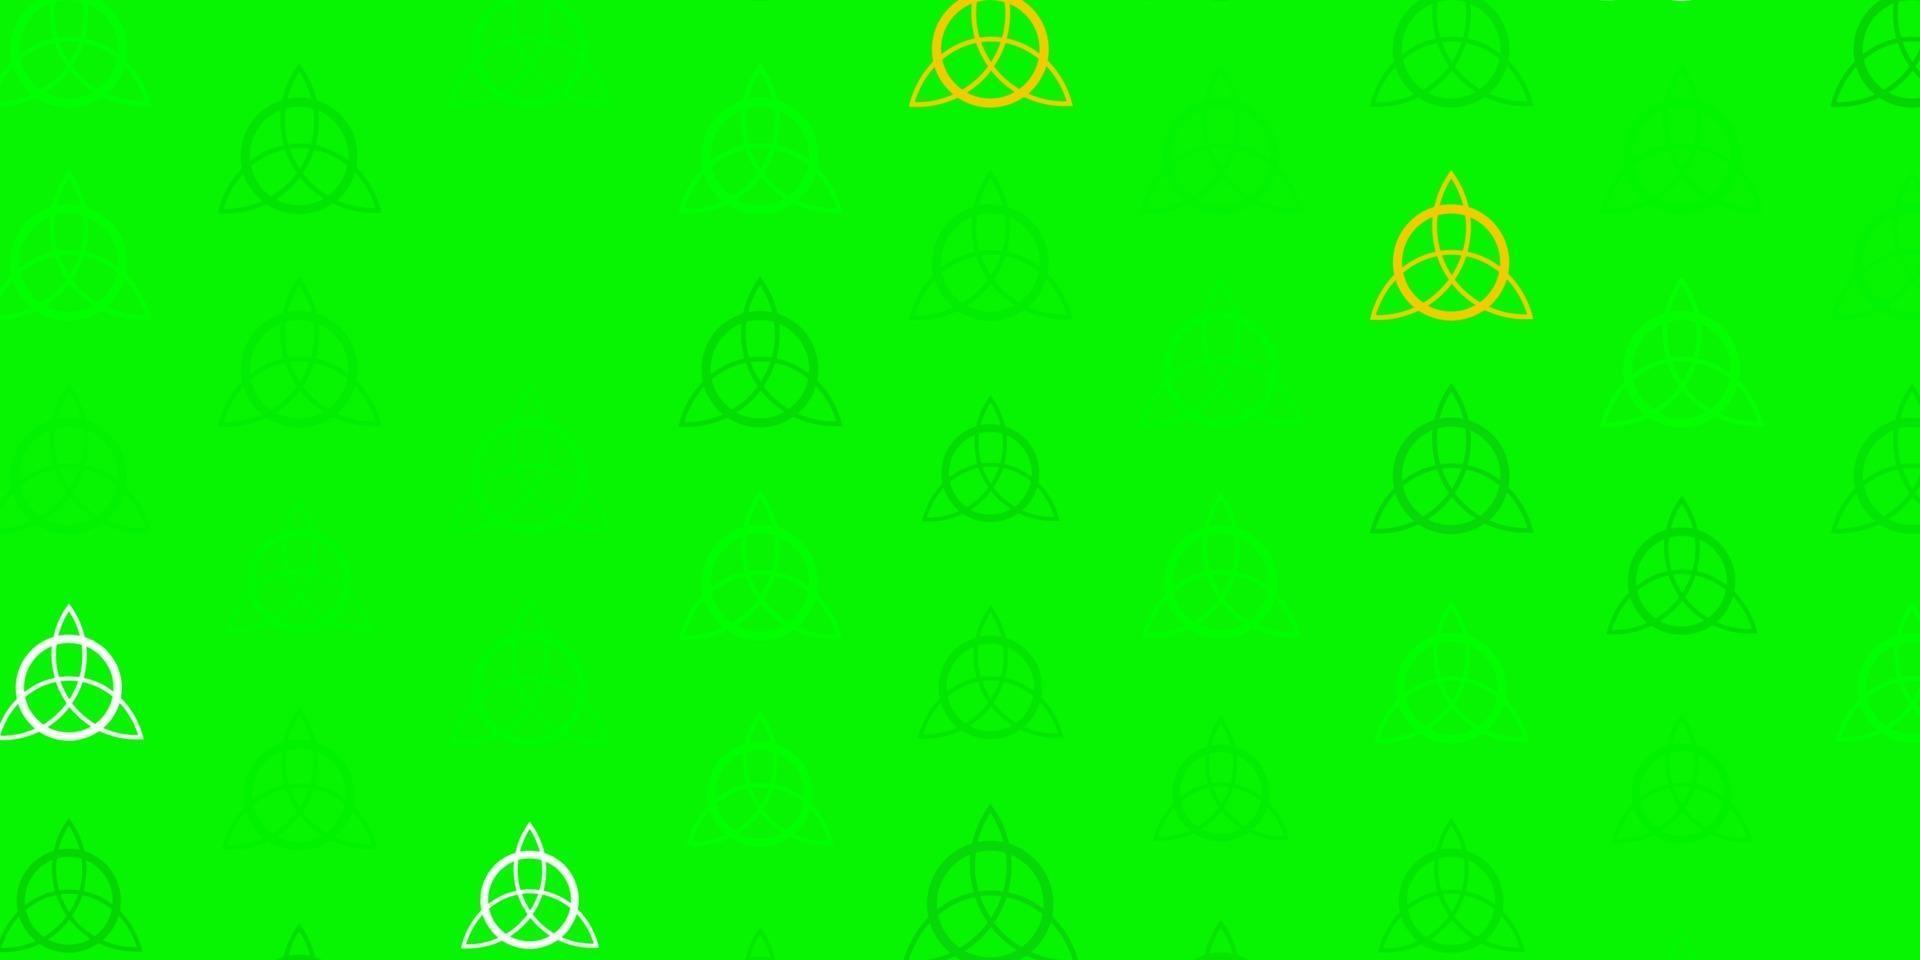 fond de vecteur vert clair, jaune avec des symboles occultes.